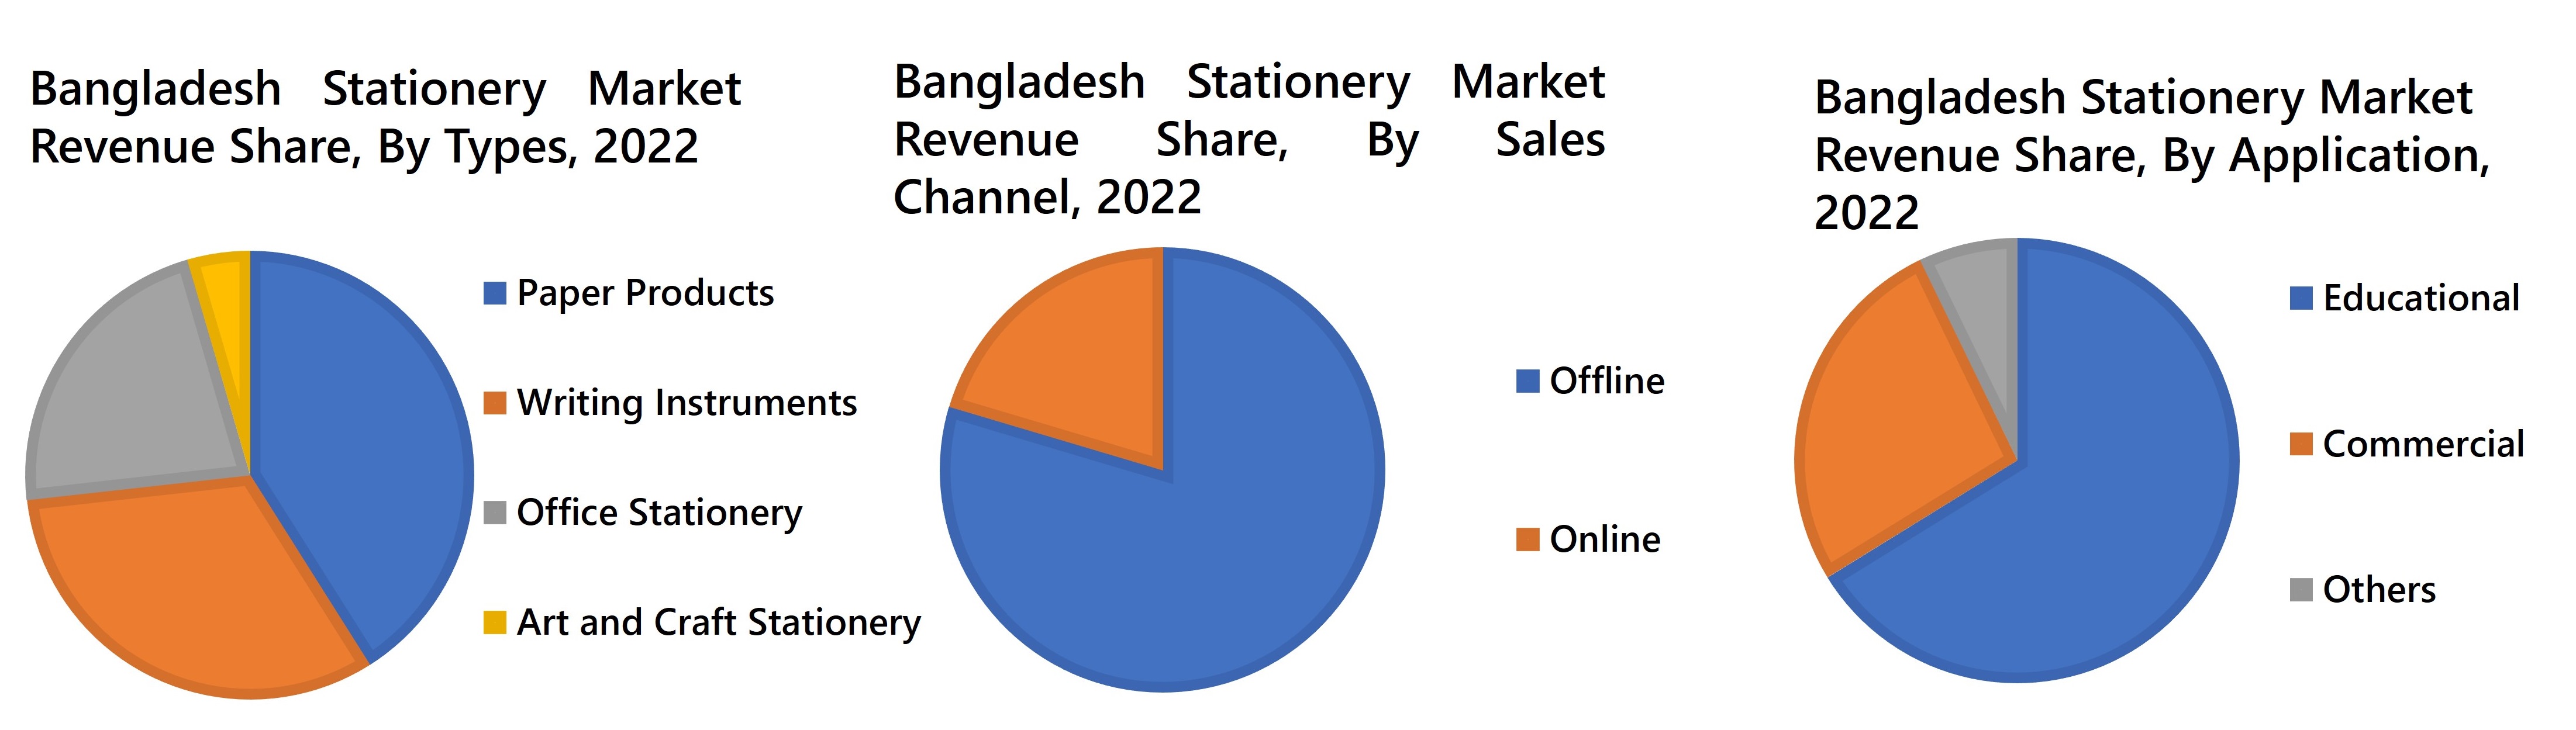 Bangladesh Stationery Market Revenue Share